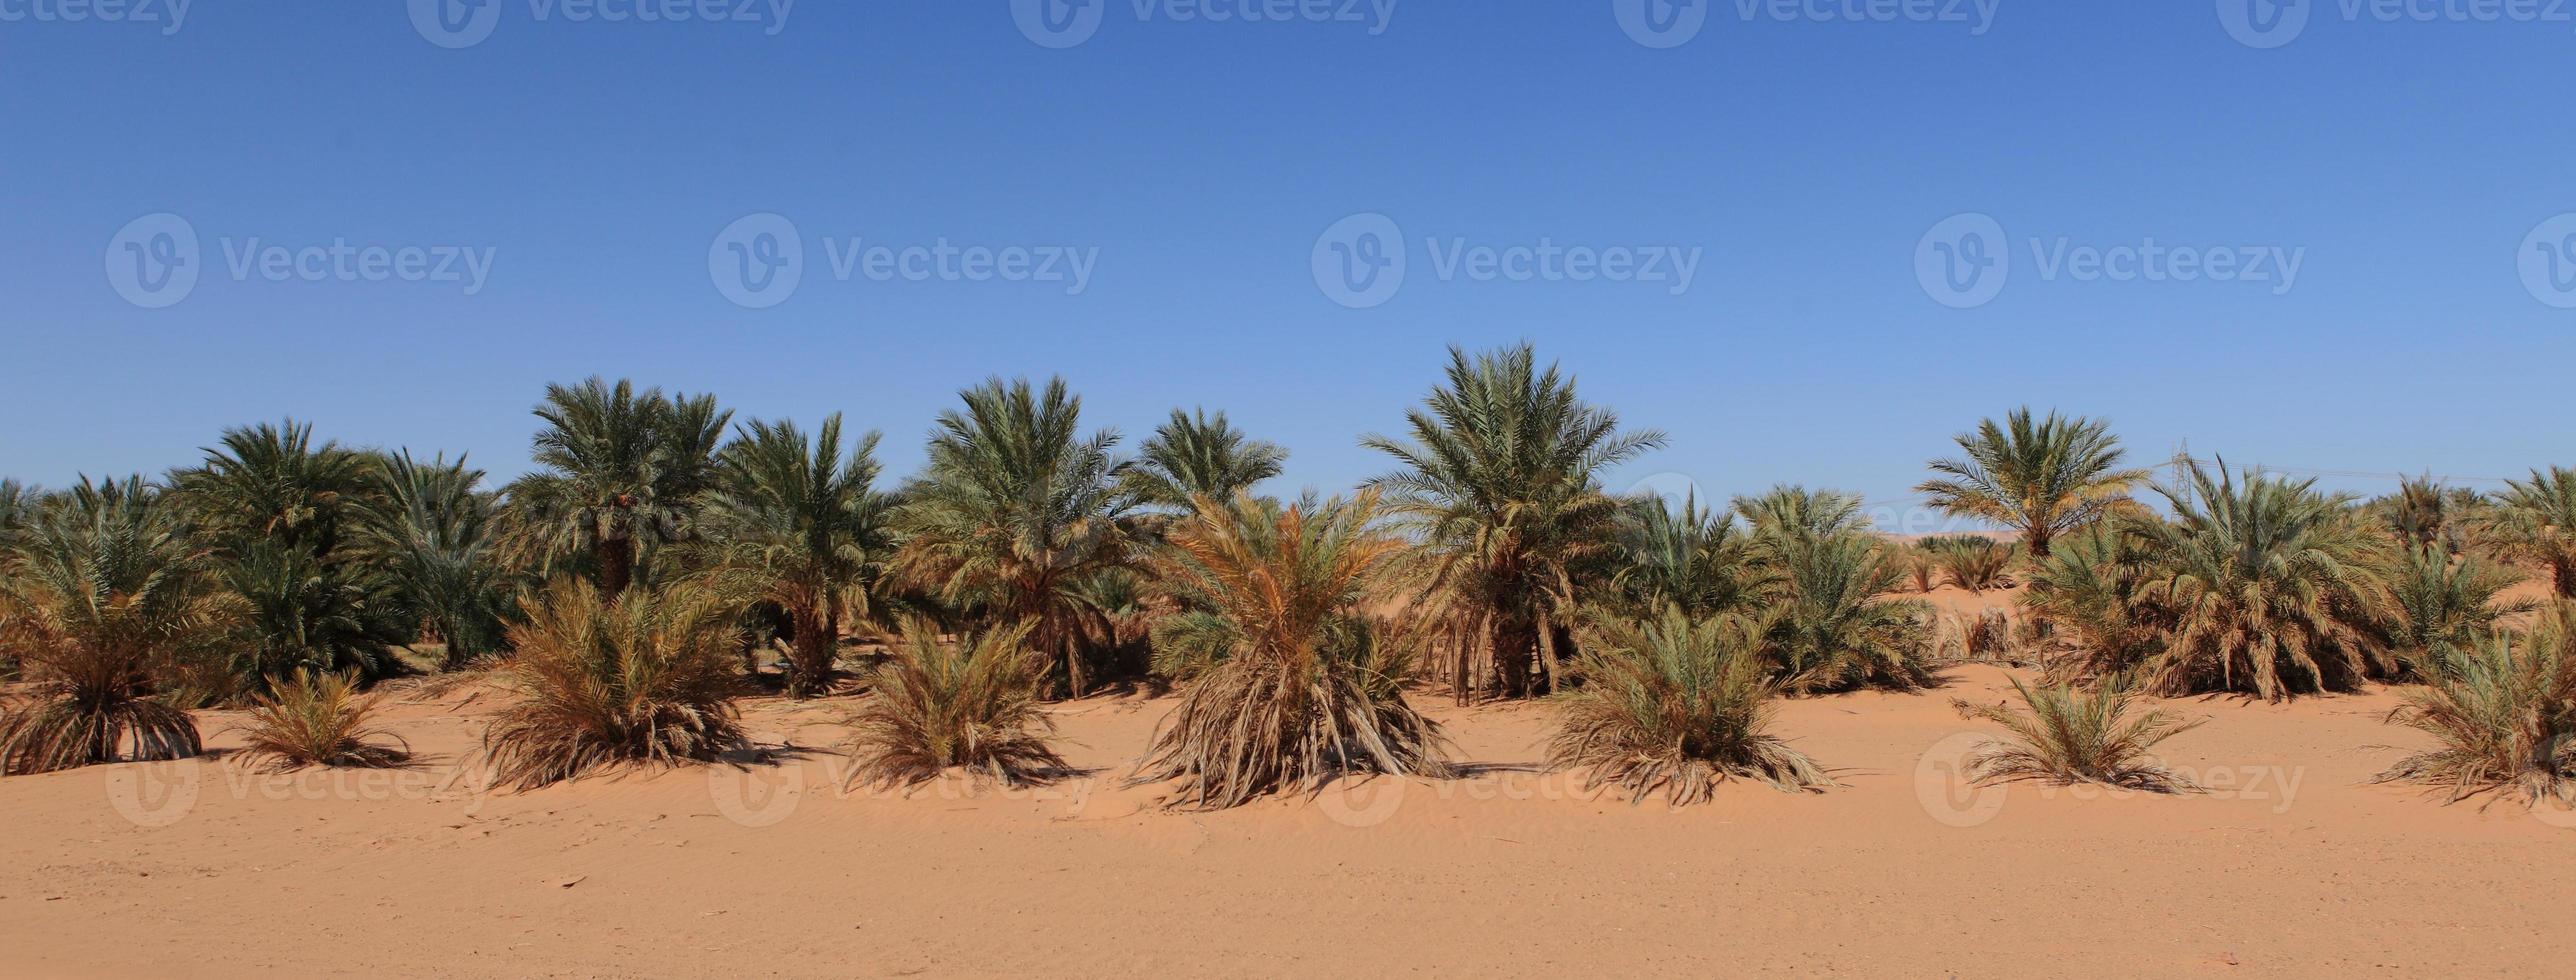 oasen in der wüste sahara foto